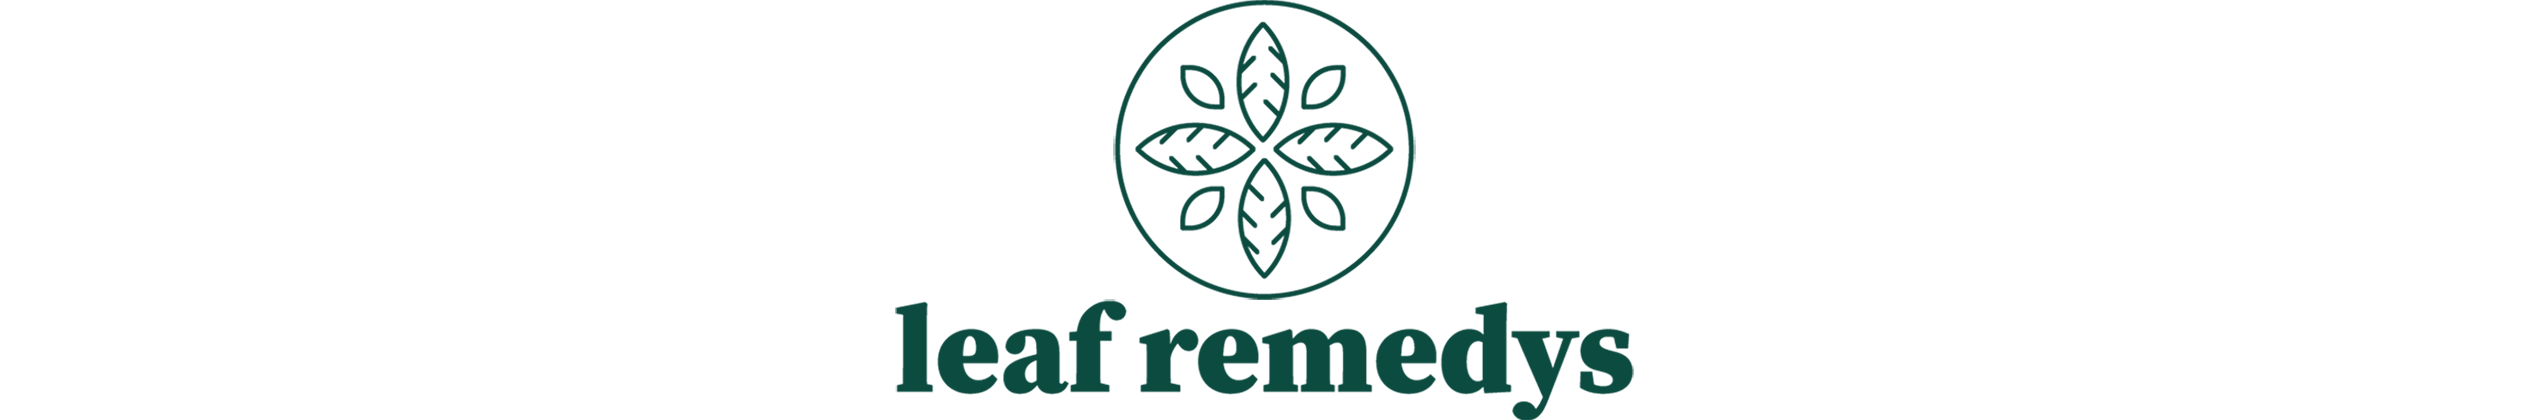 leaf-remedies-logo-420px